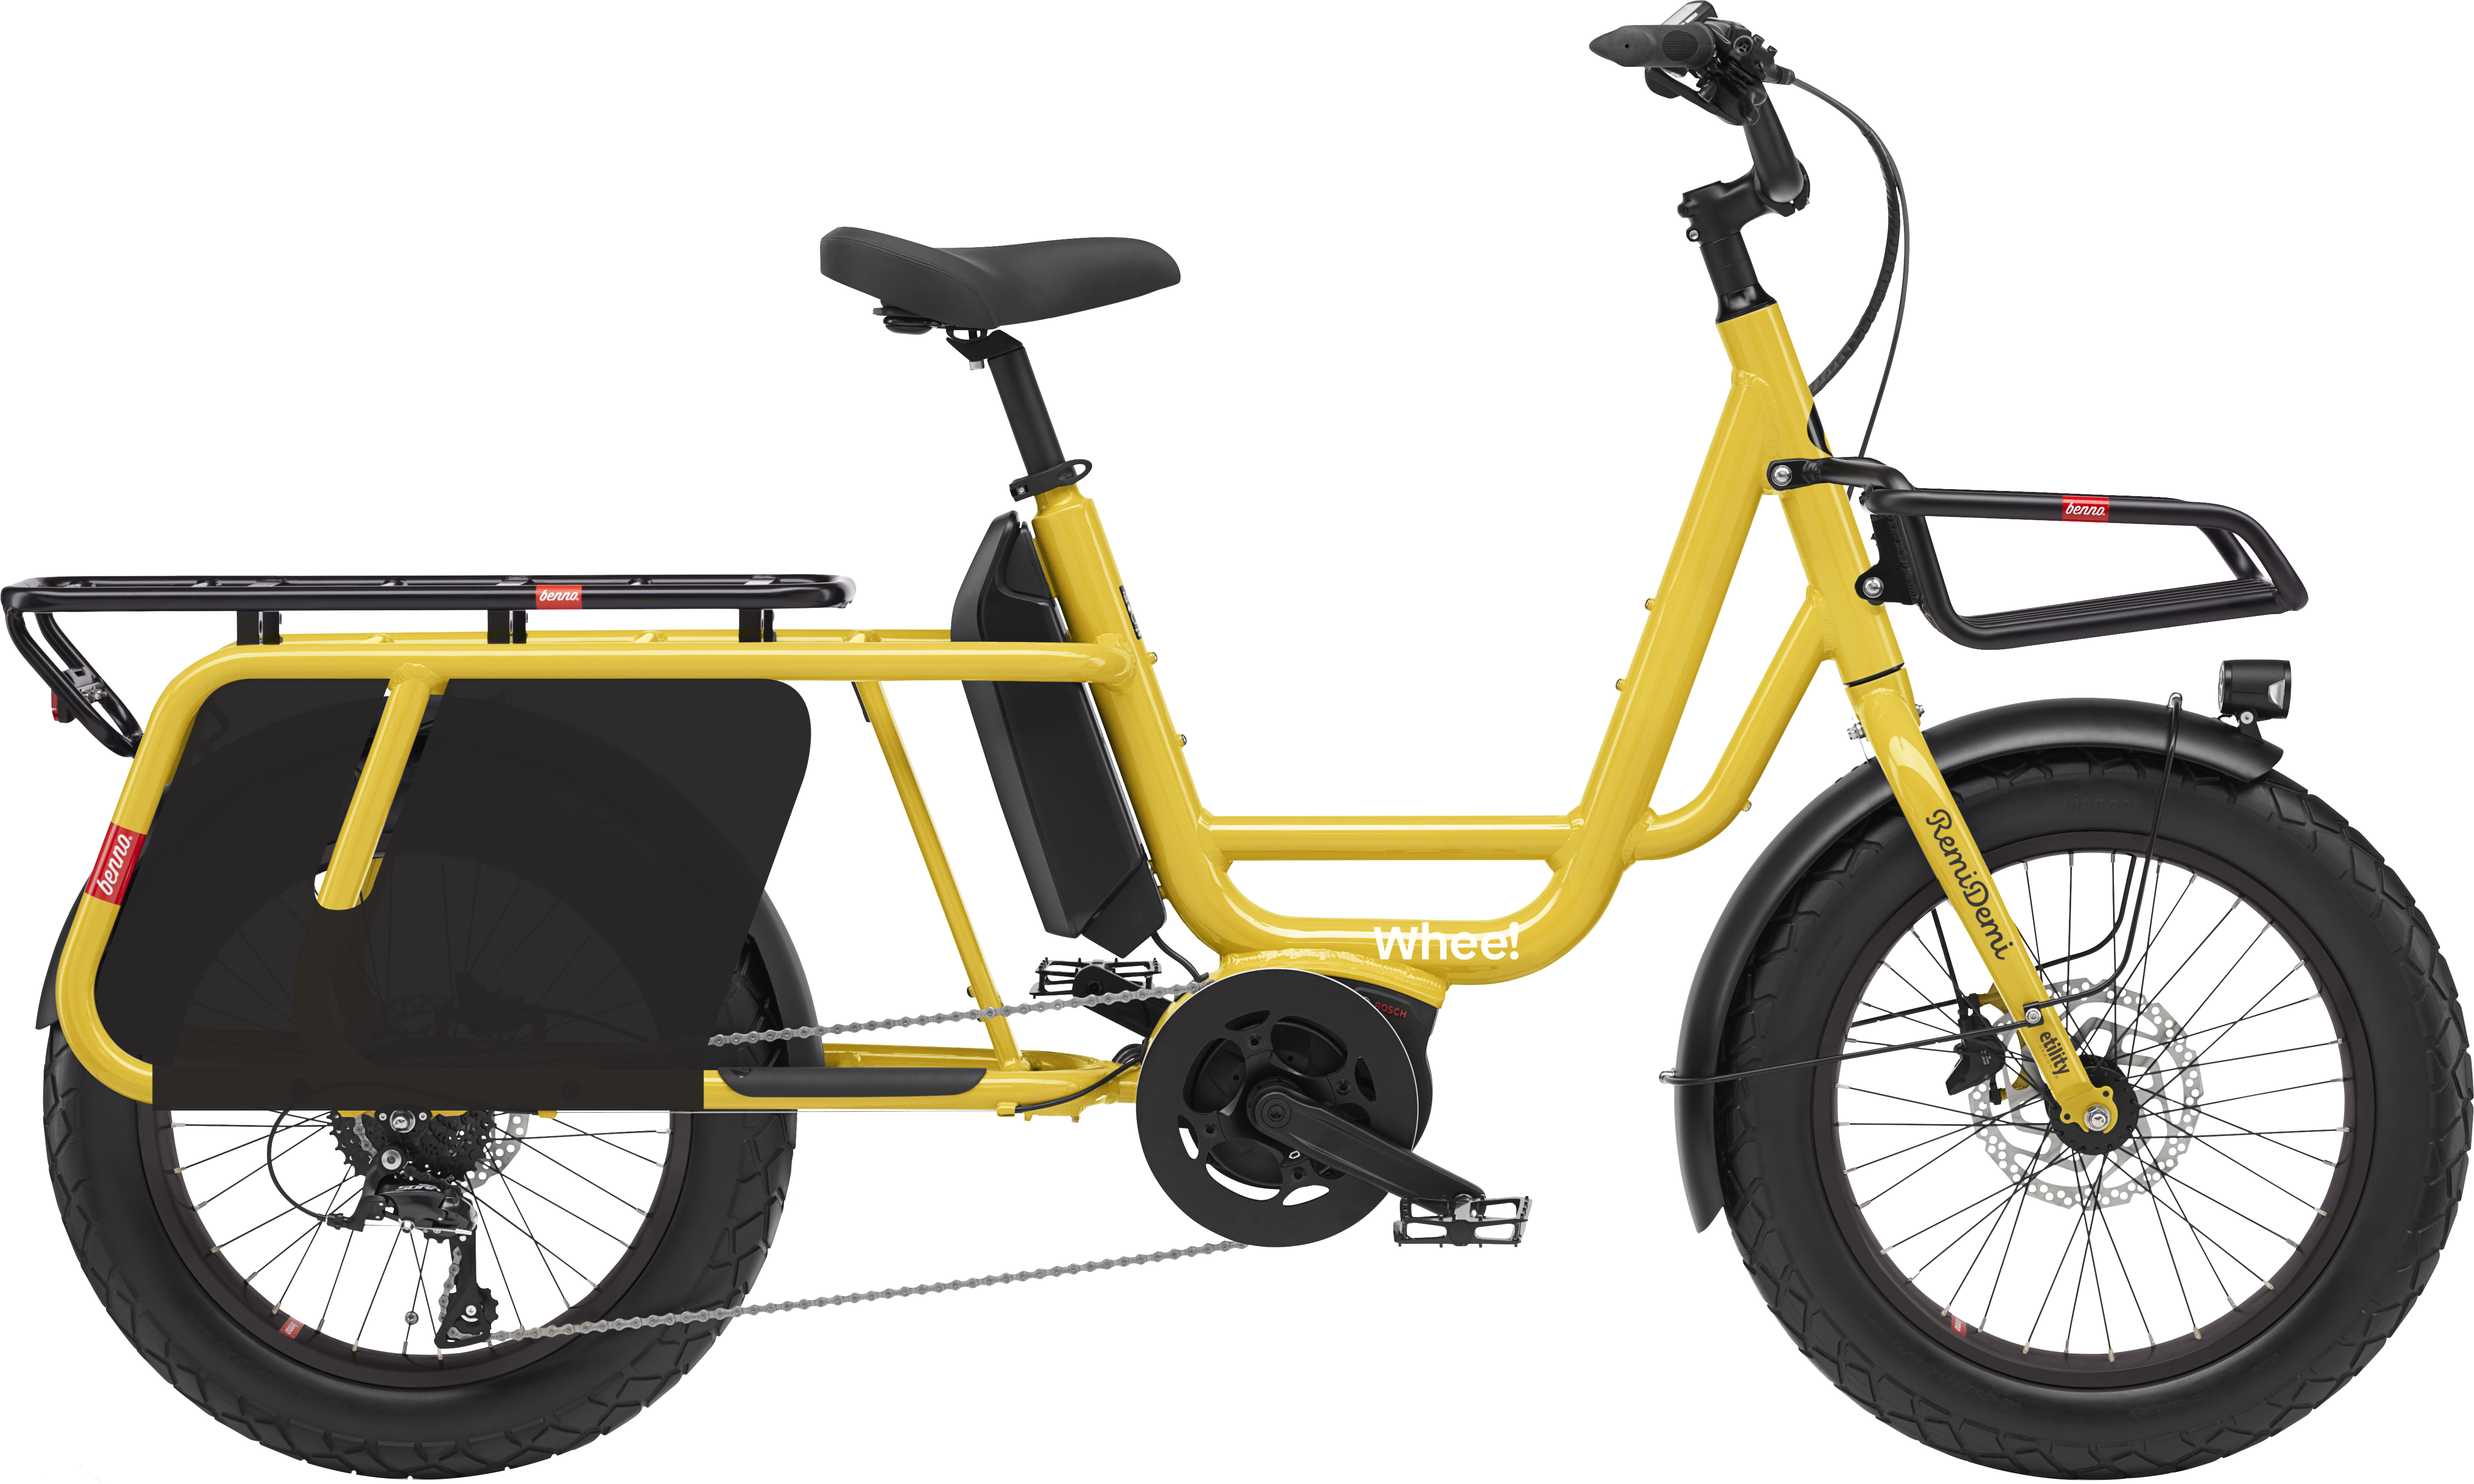 En grå Midtail cargobike av type RemiDemi XL med Whee!-logo. Sykkelen har avrundede former, lavt innsteg og små hjul med brede dekk.